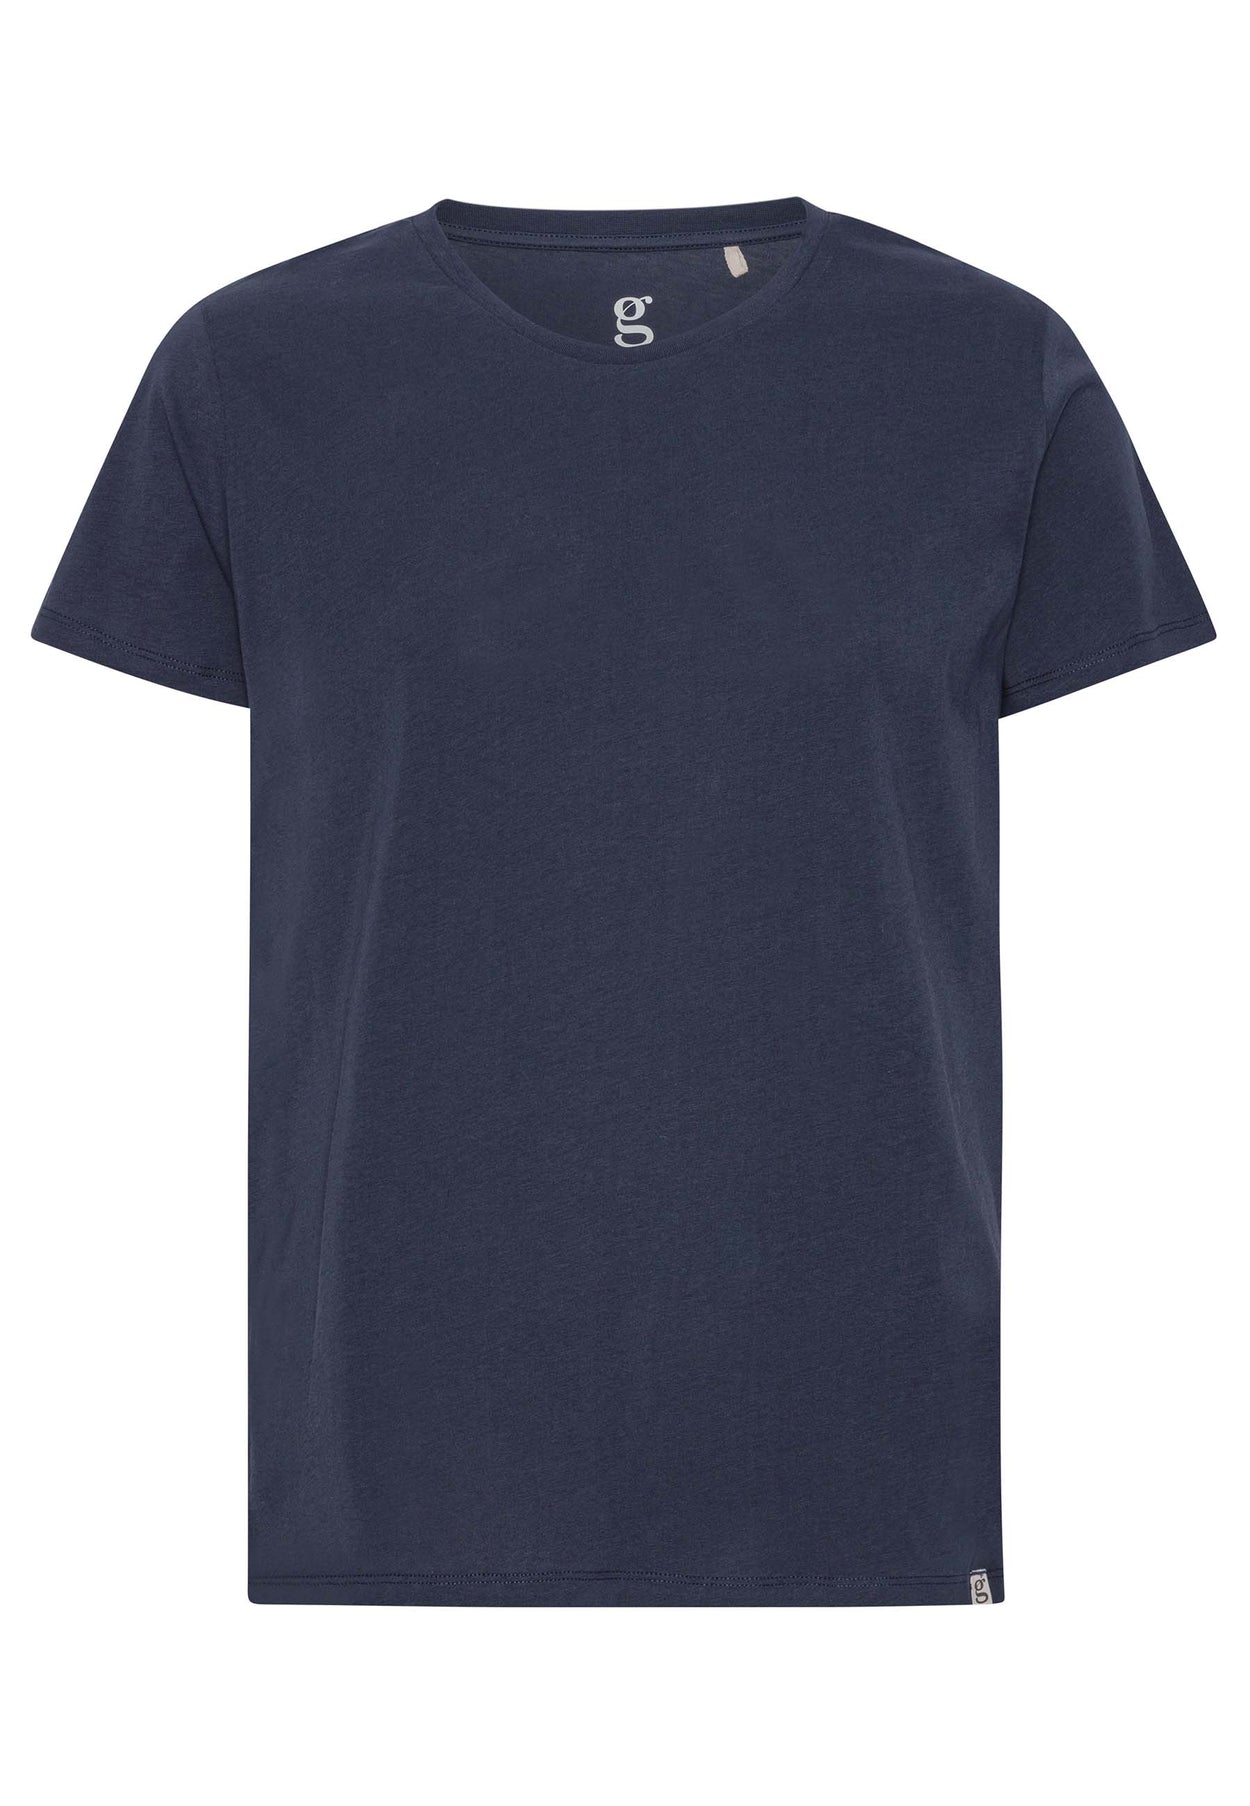 GROBUND Alfie t-shirten - den i midnatsblå